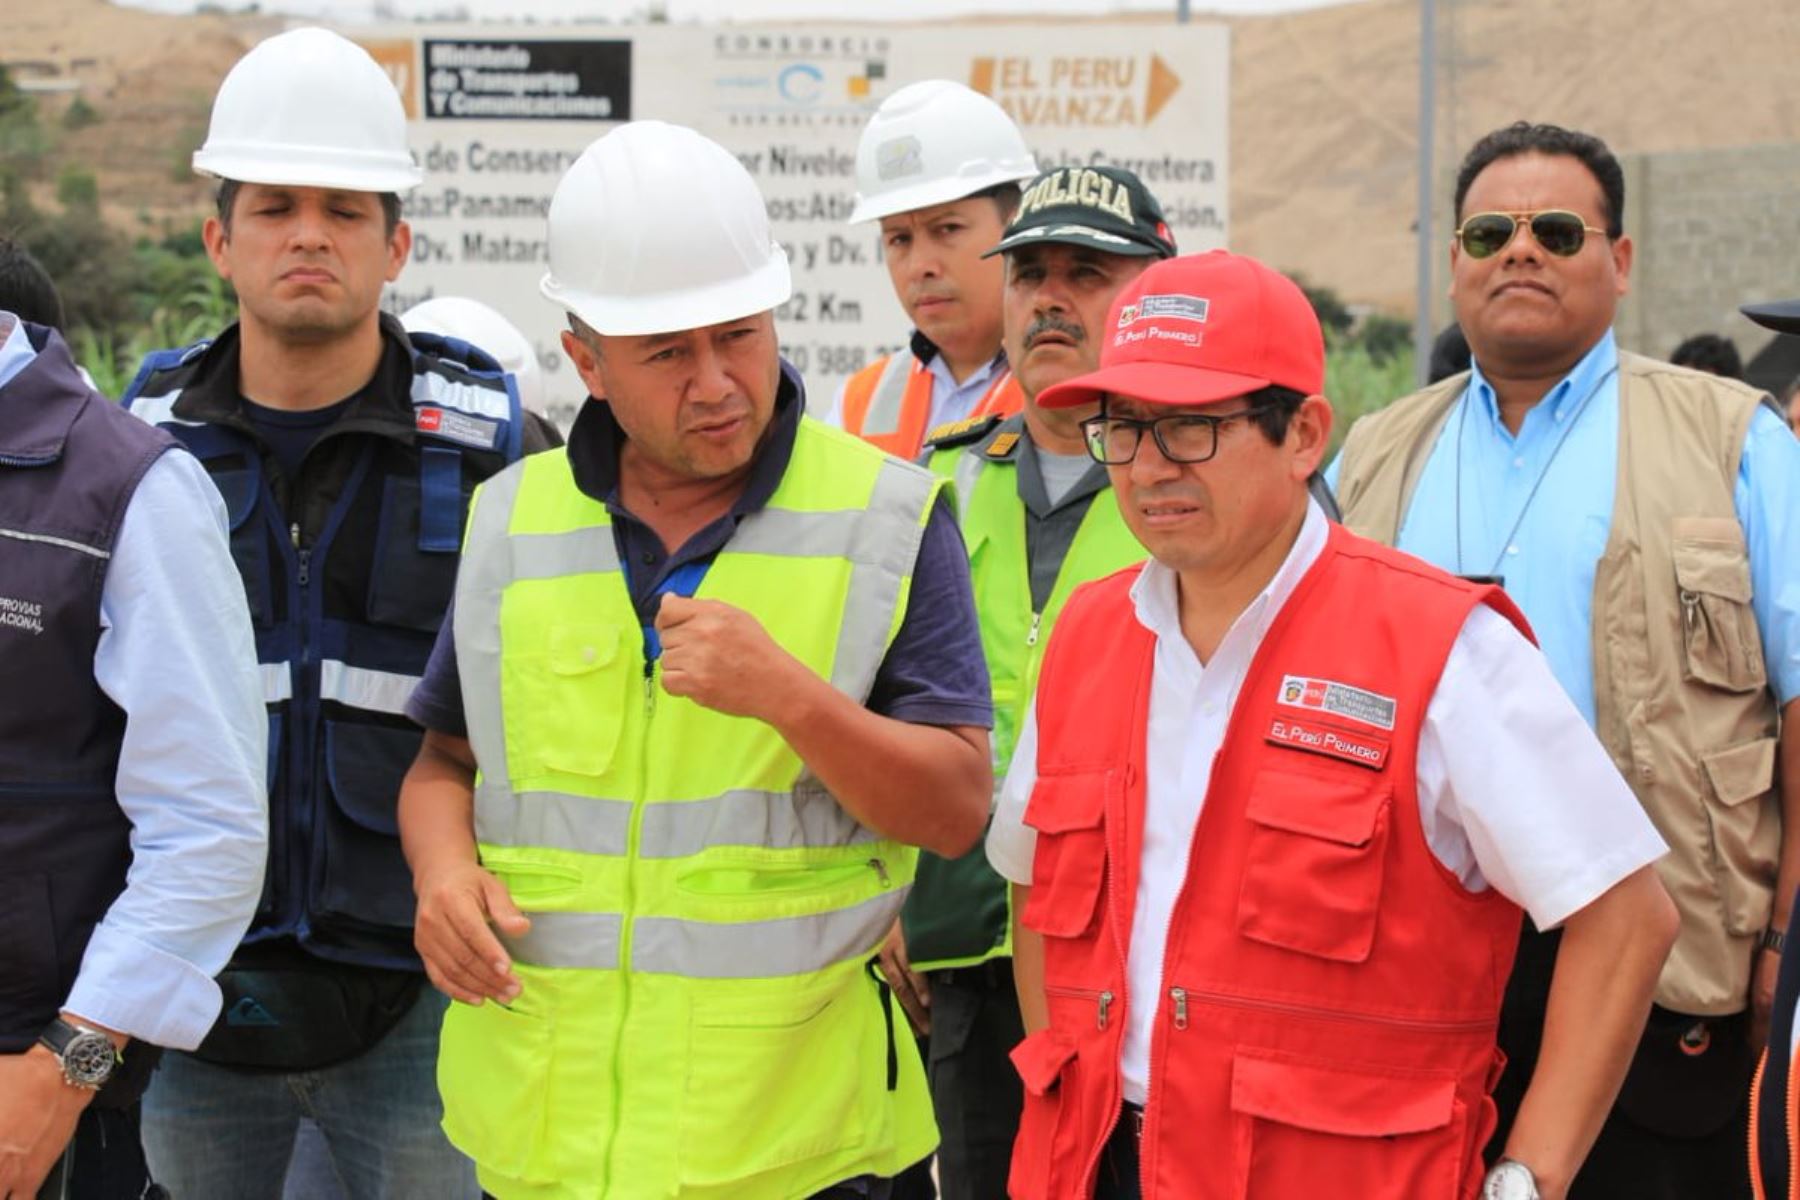 El MTC Inicia trabajos para instalar nueva estructura que reemplazará a colapsado puente Montalvo, afirma ministro Edmer Trujillo. ANDINA/Difusión